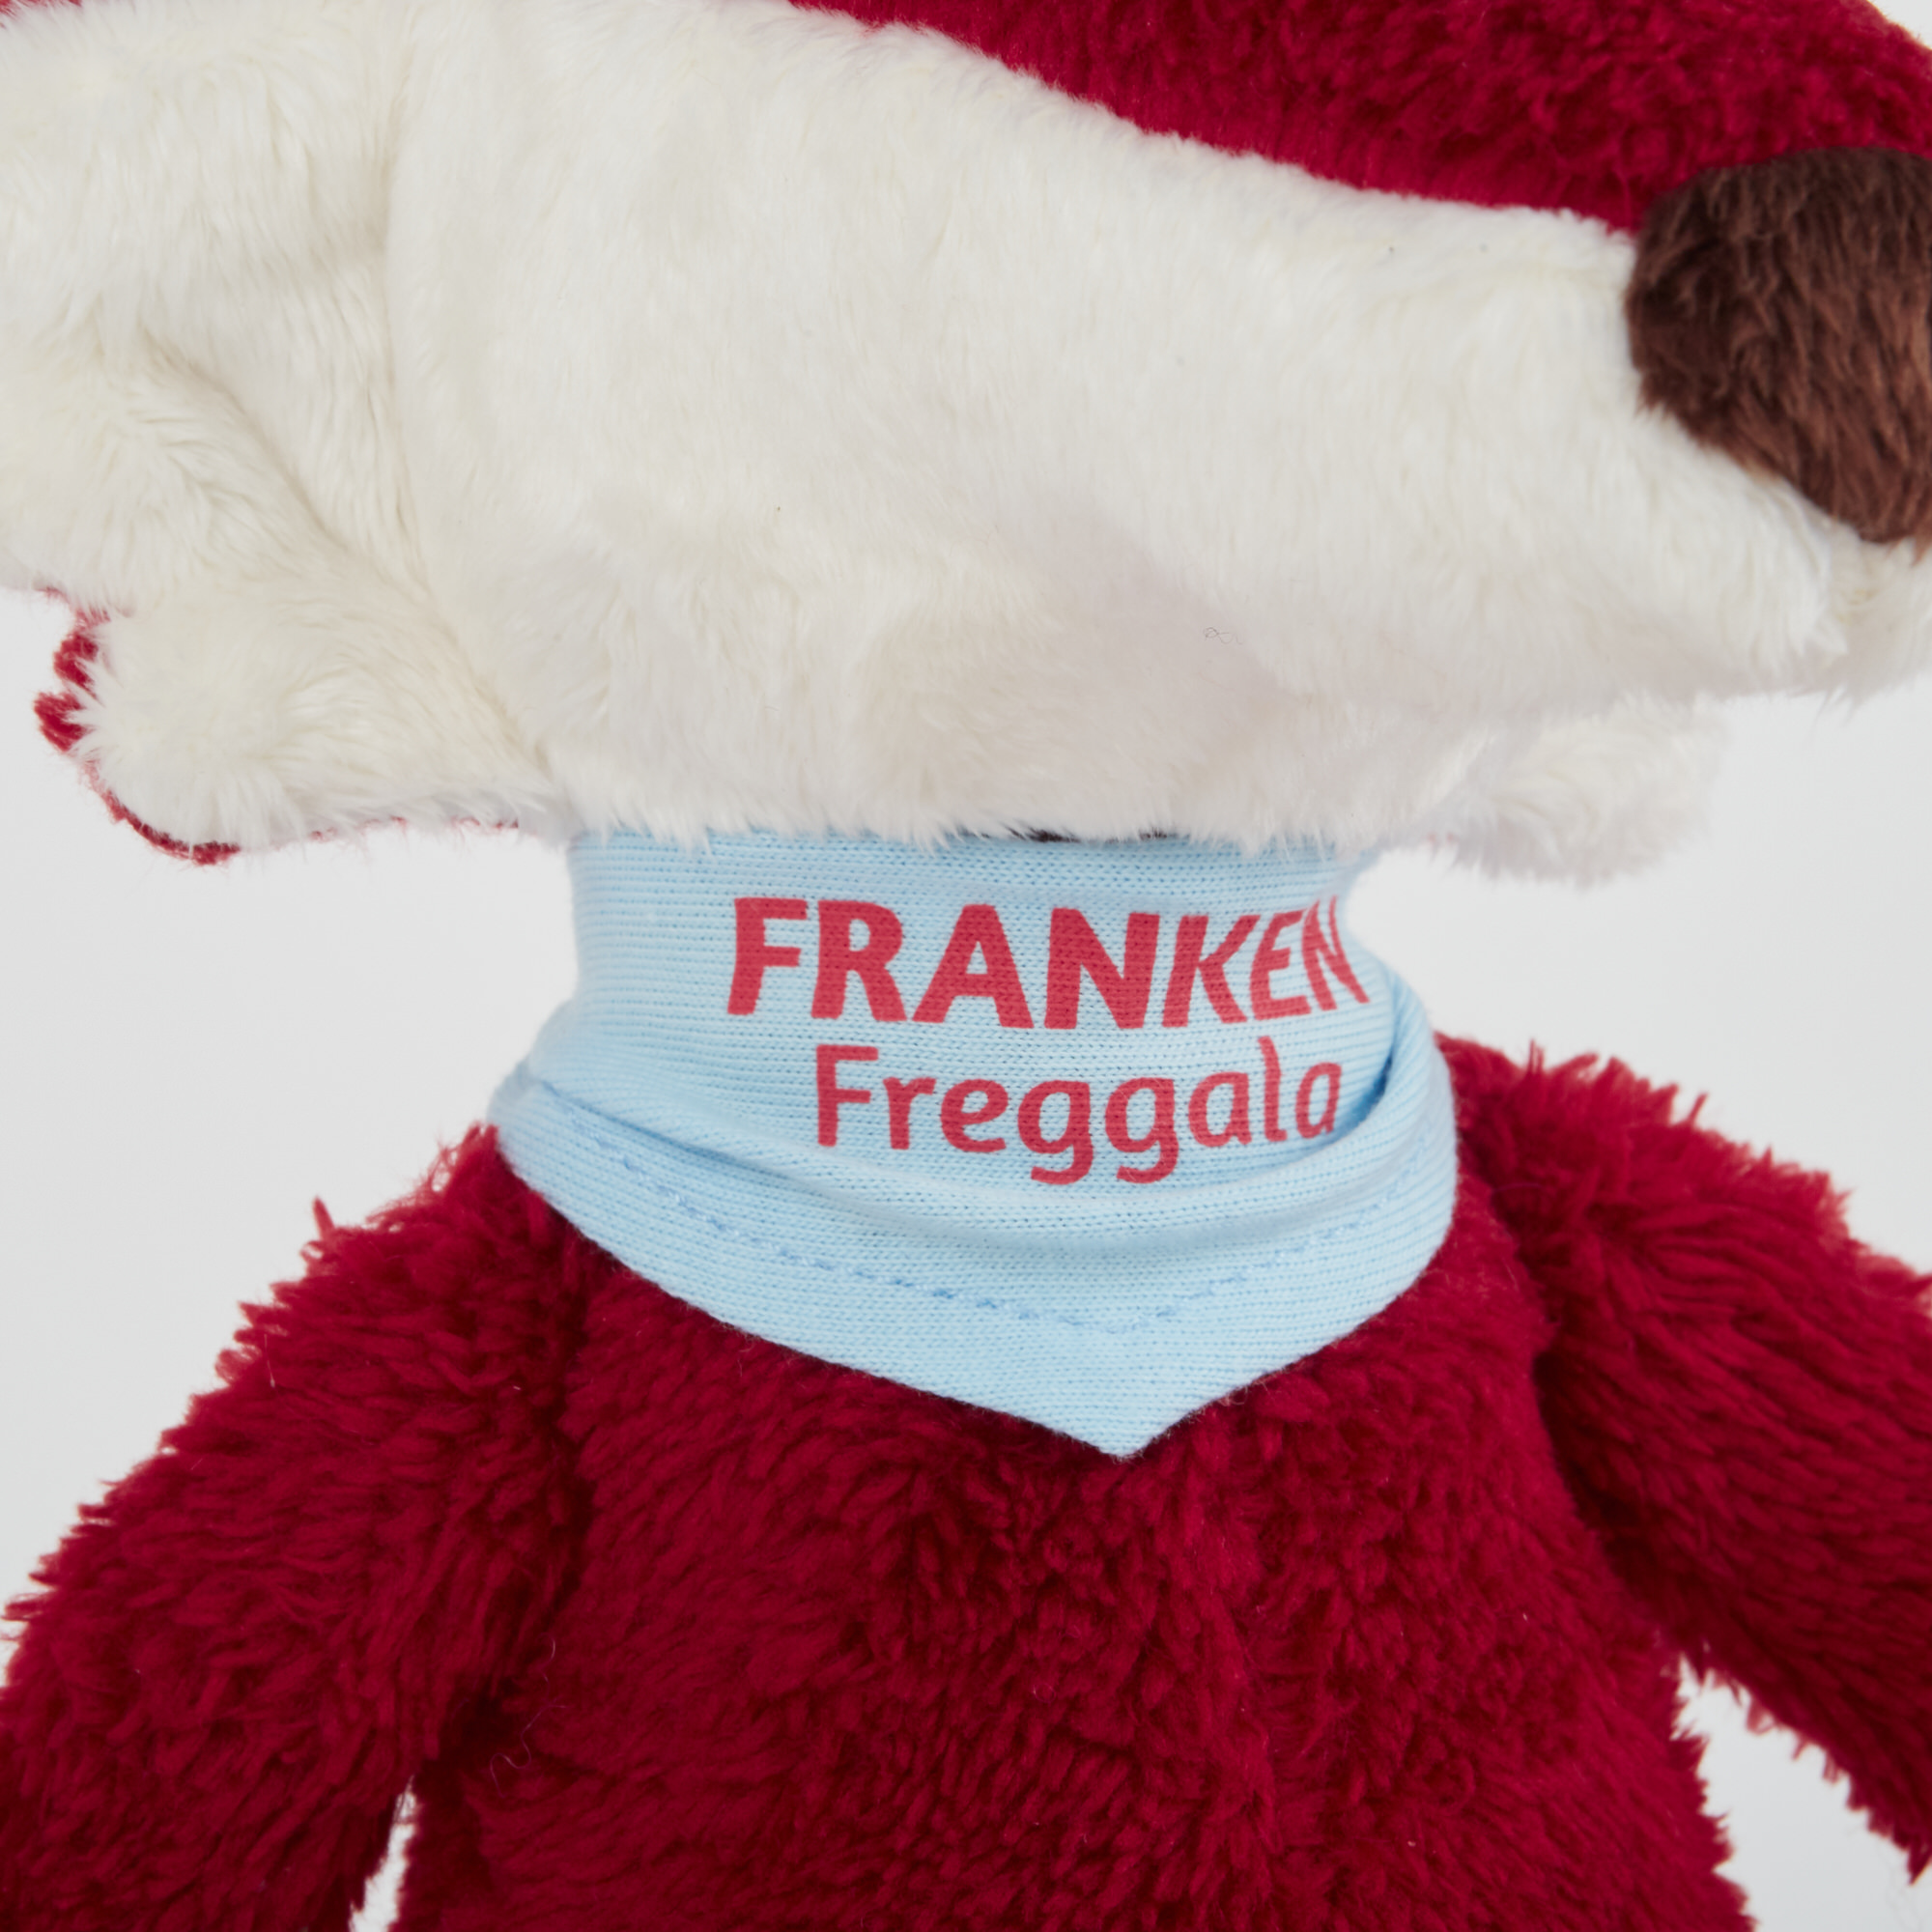 Plush fox "Freggerla", Franconian mascot